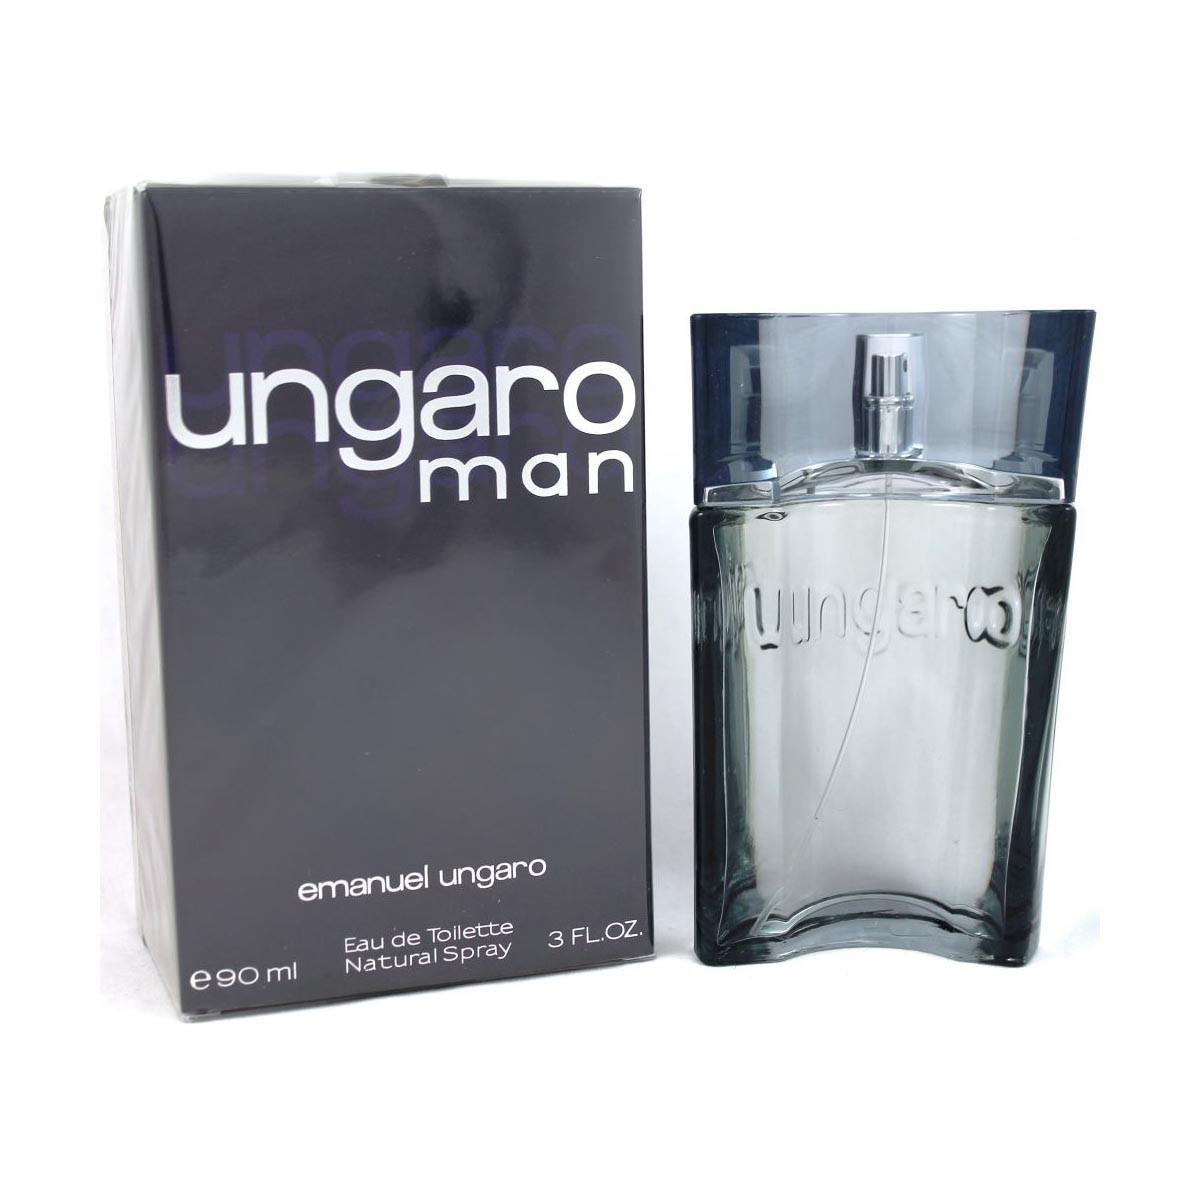 emanuel-ungaro-parfume-ungaro-man-edt-90ml